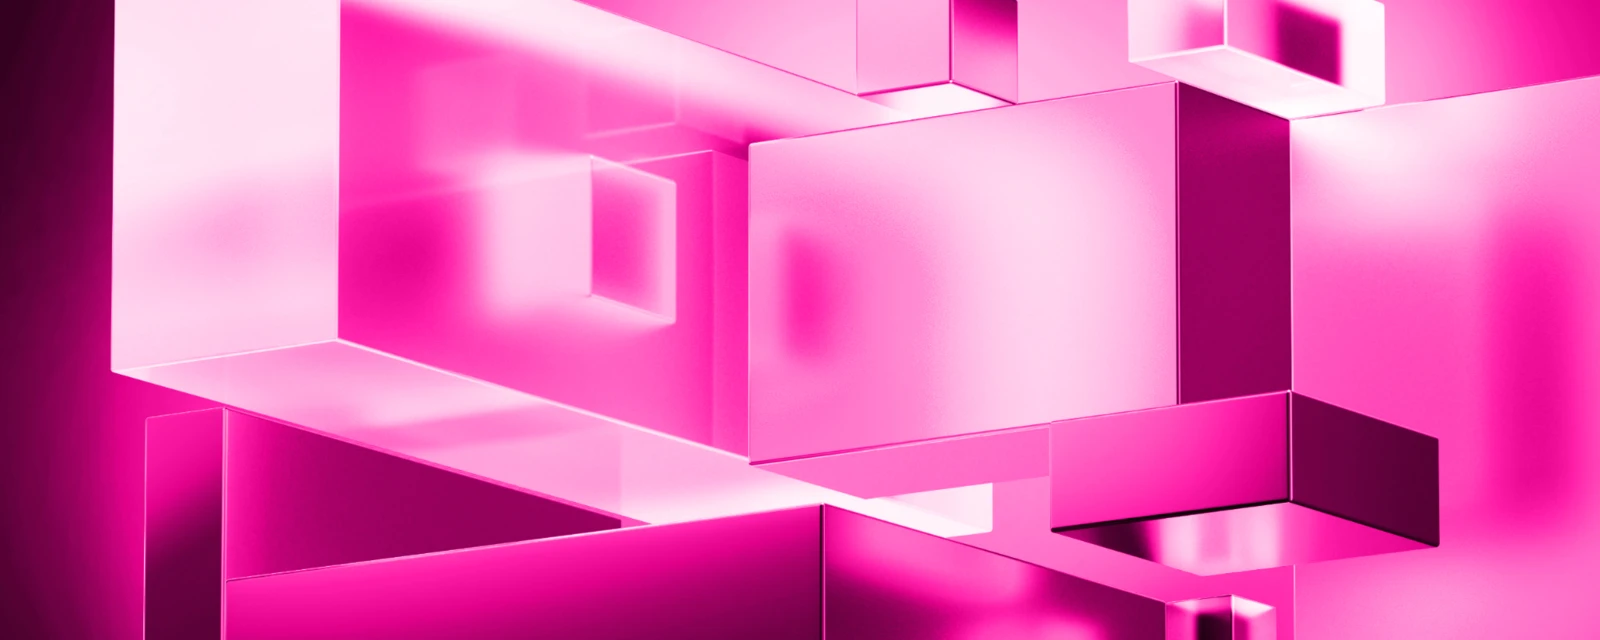 Kubistische Formen in Pinktönen